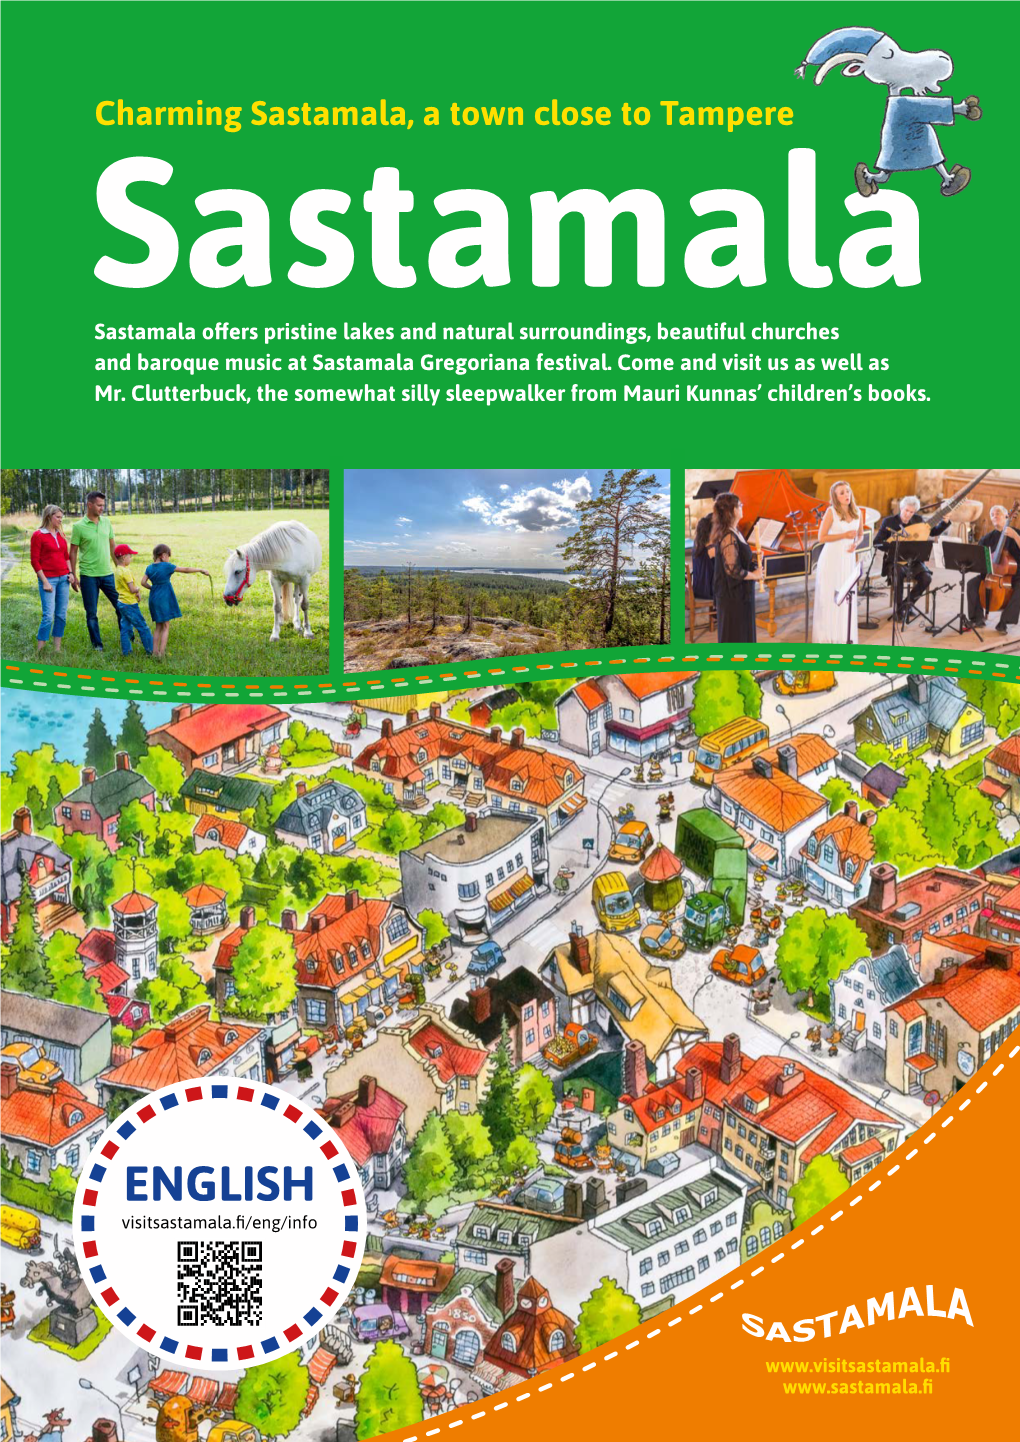 Visit Sastamala in English